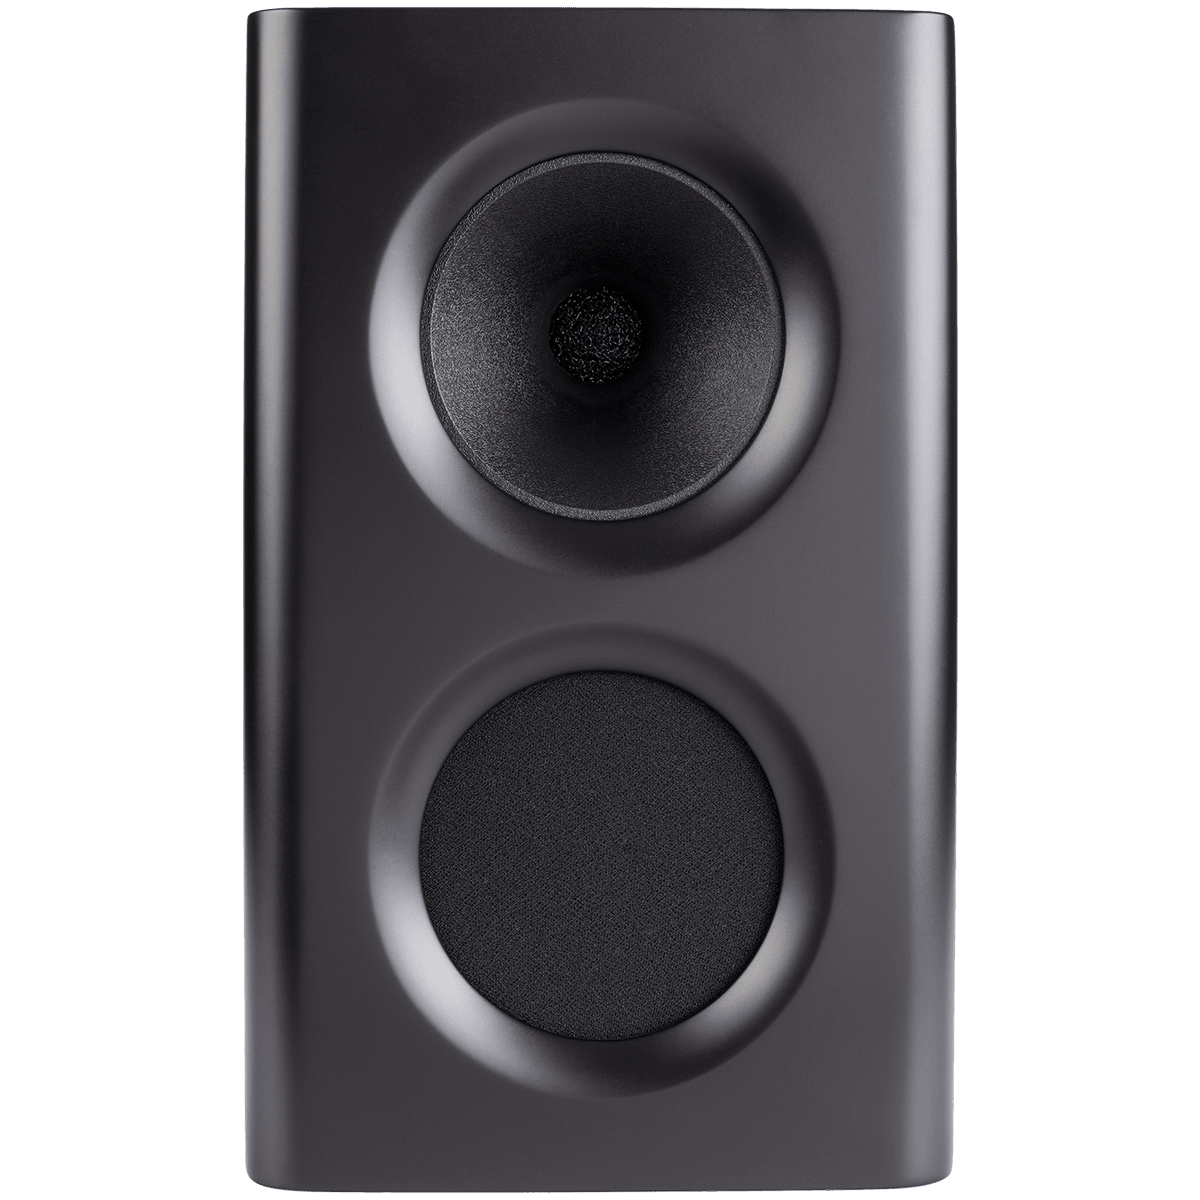 Procella P5 monitor speakers